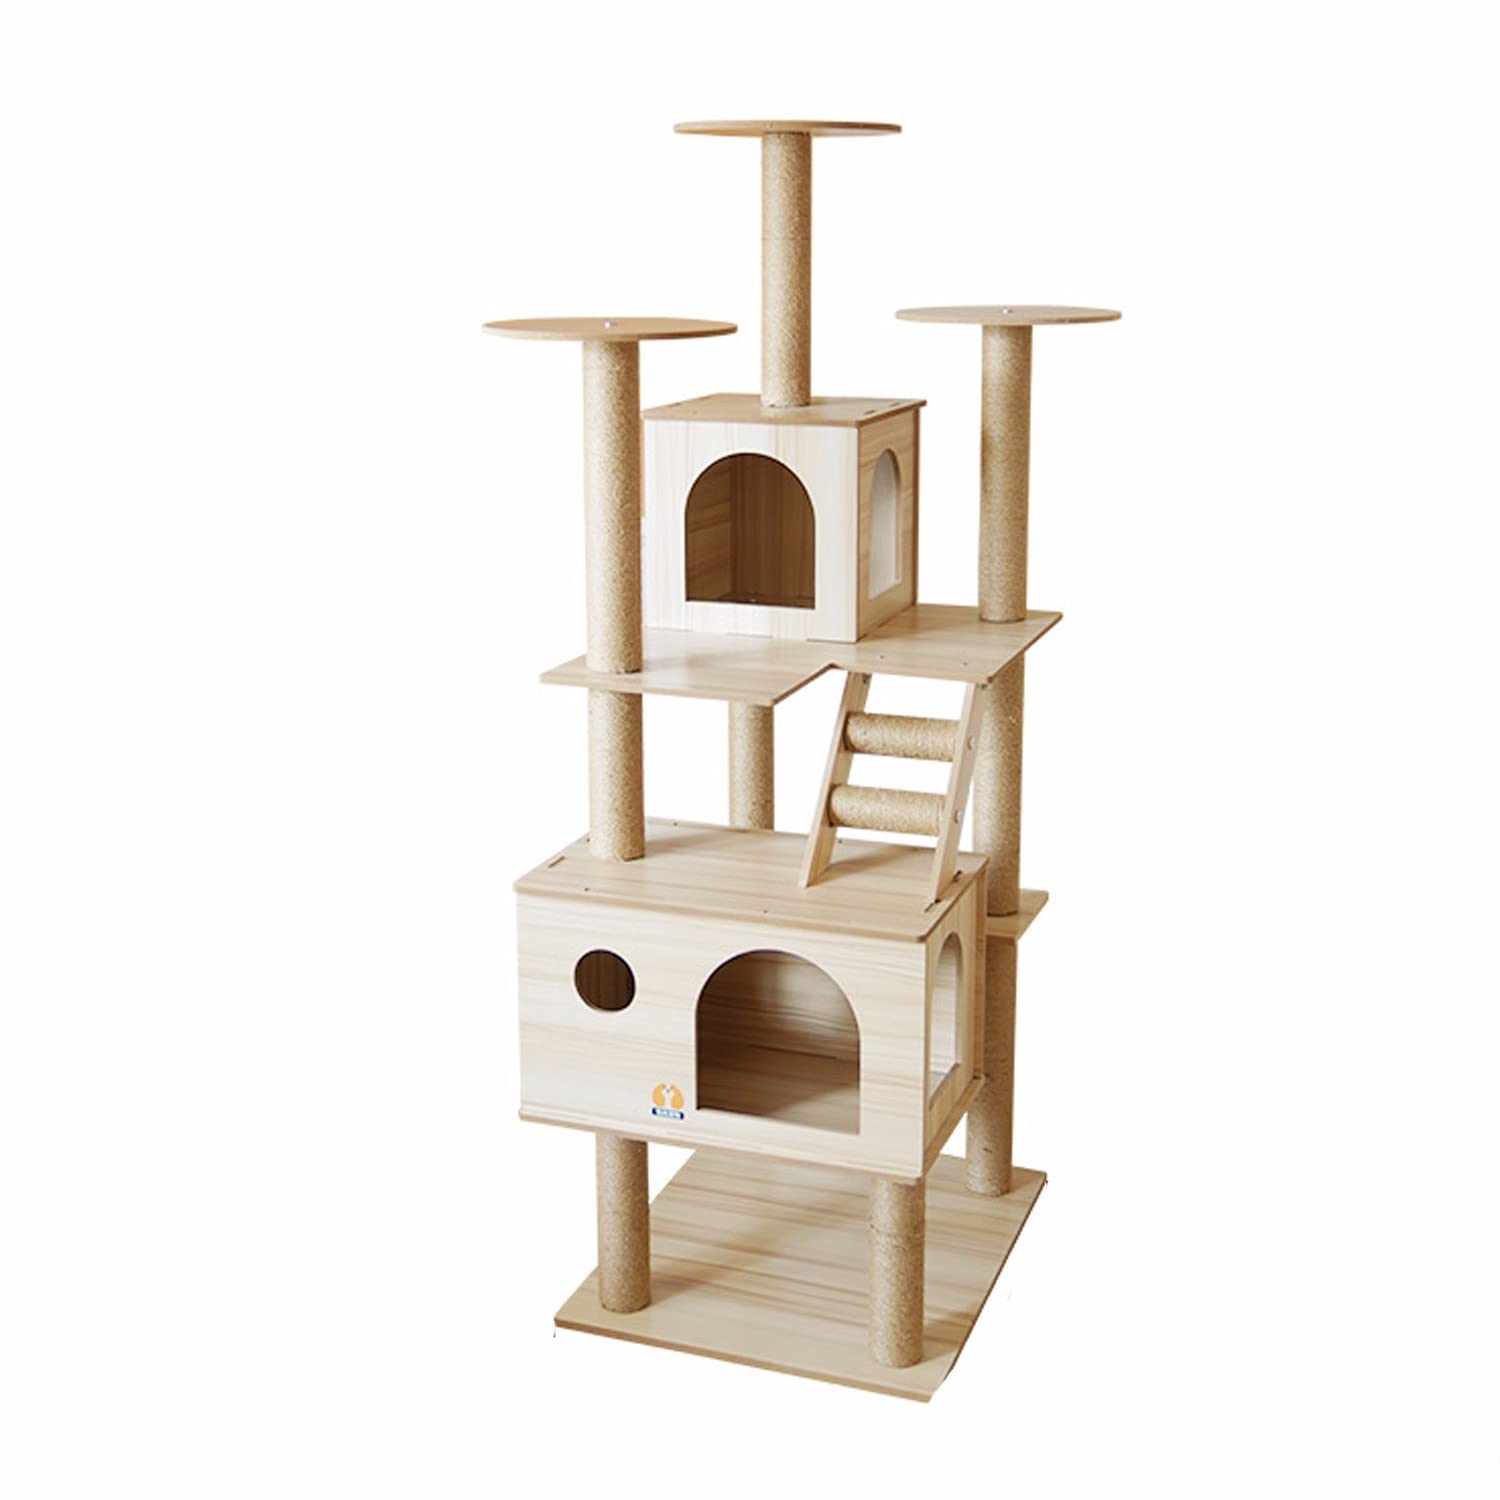 WSYKC 6 Schicht, 1550mm Großer Katzenkletterturm, Moderner Katzenbaum Für Große Katzen, Für Innenkatzen Mit Holzkatze, Hängematte Und Kratzerpfosten